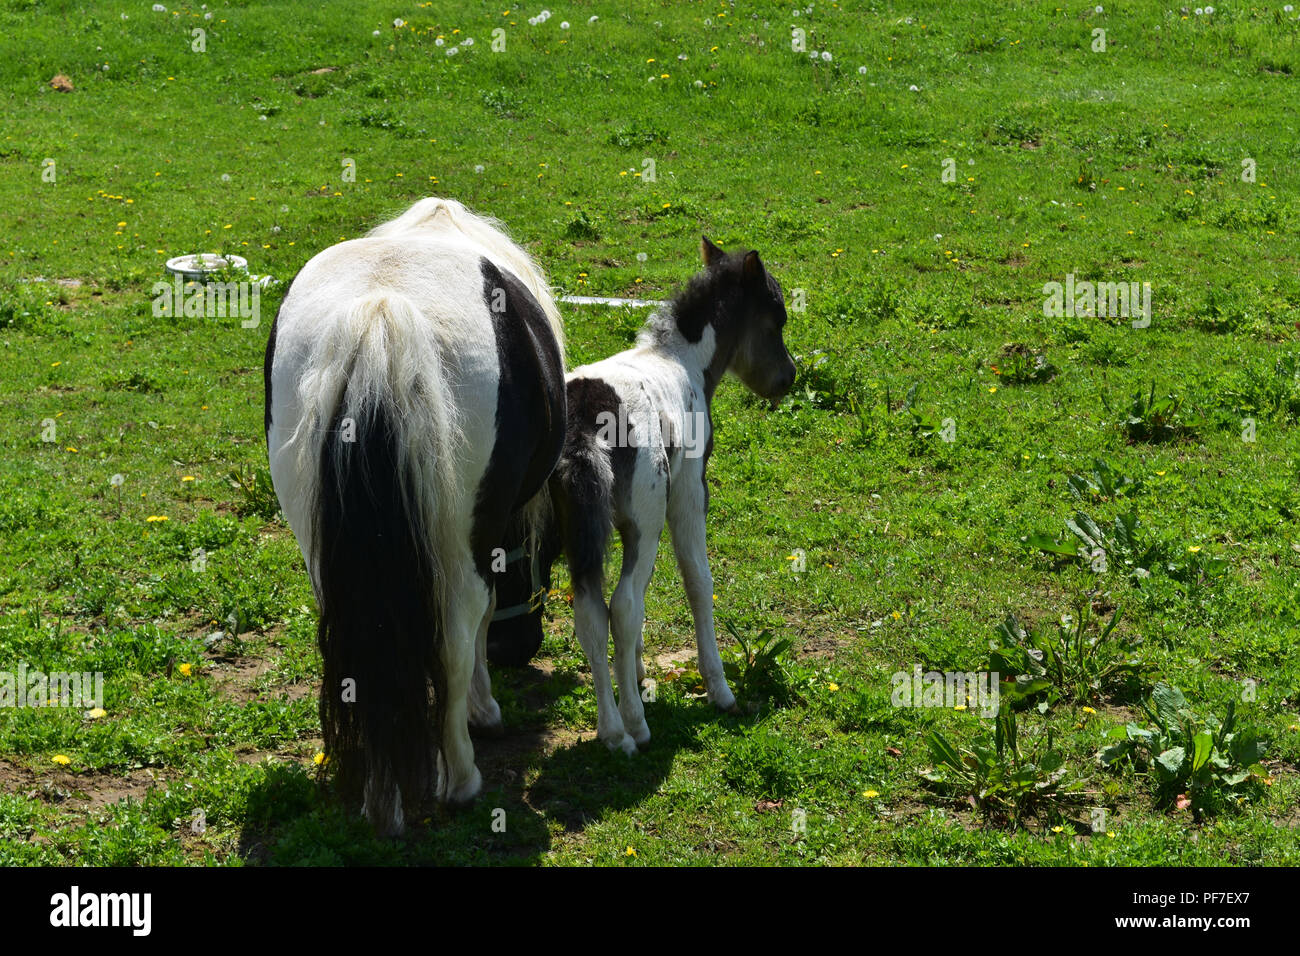 Adorable Schwarze und Weiße Mini Pferd Stute und Fohlen auf der Weide  Stockfotografie - Alamy